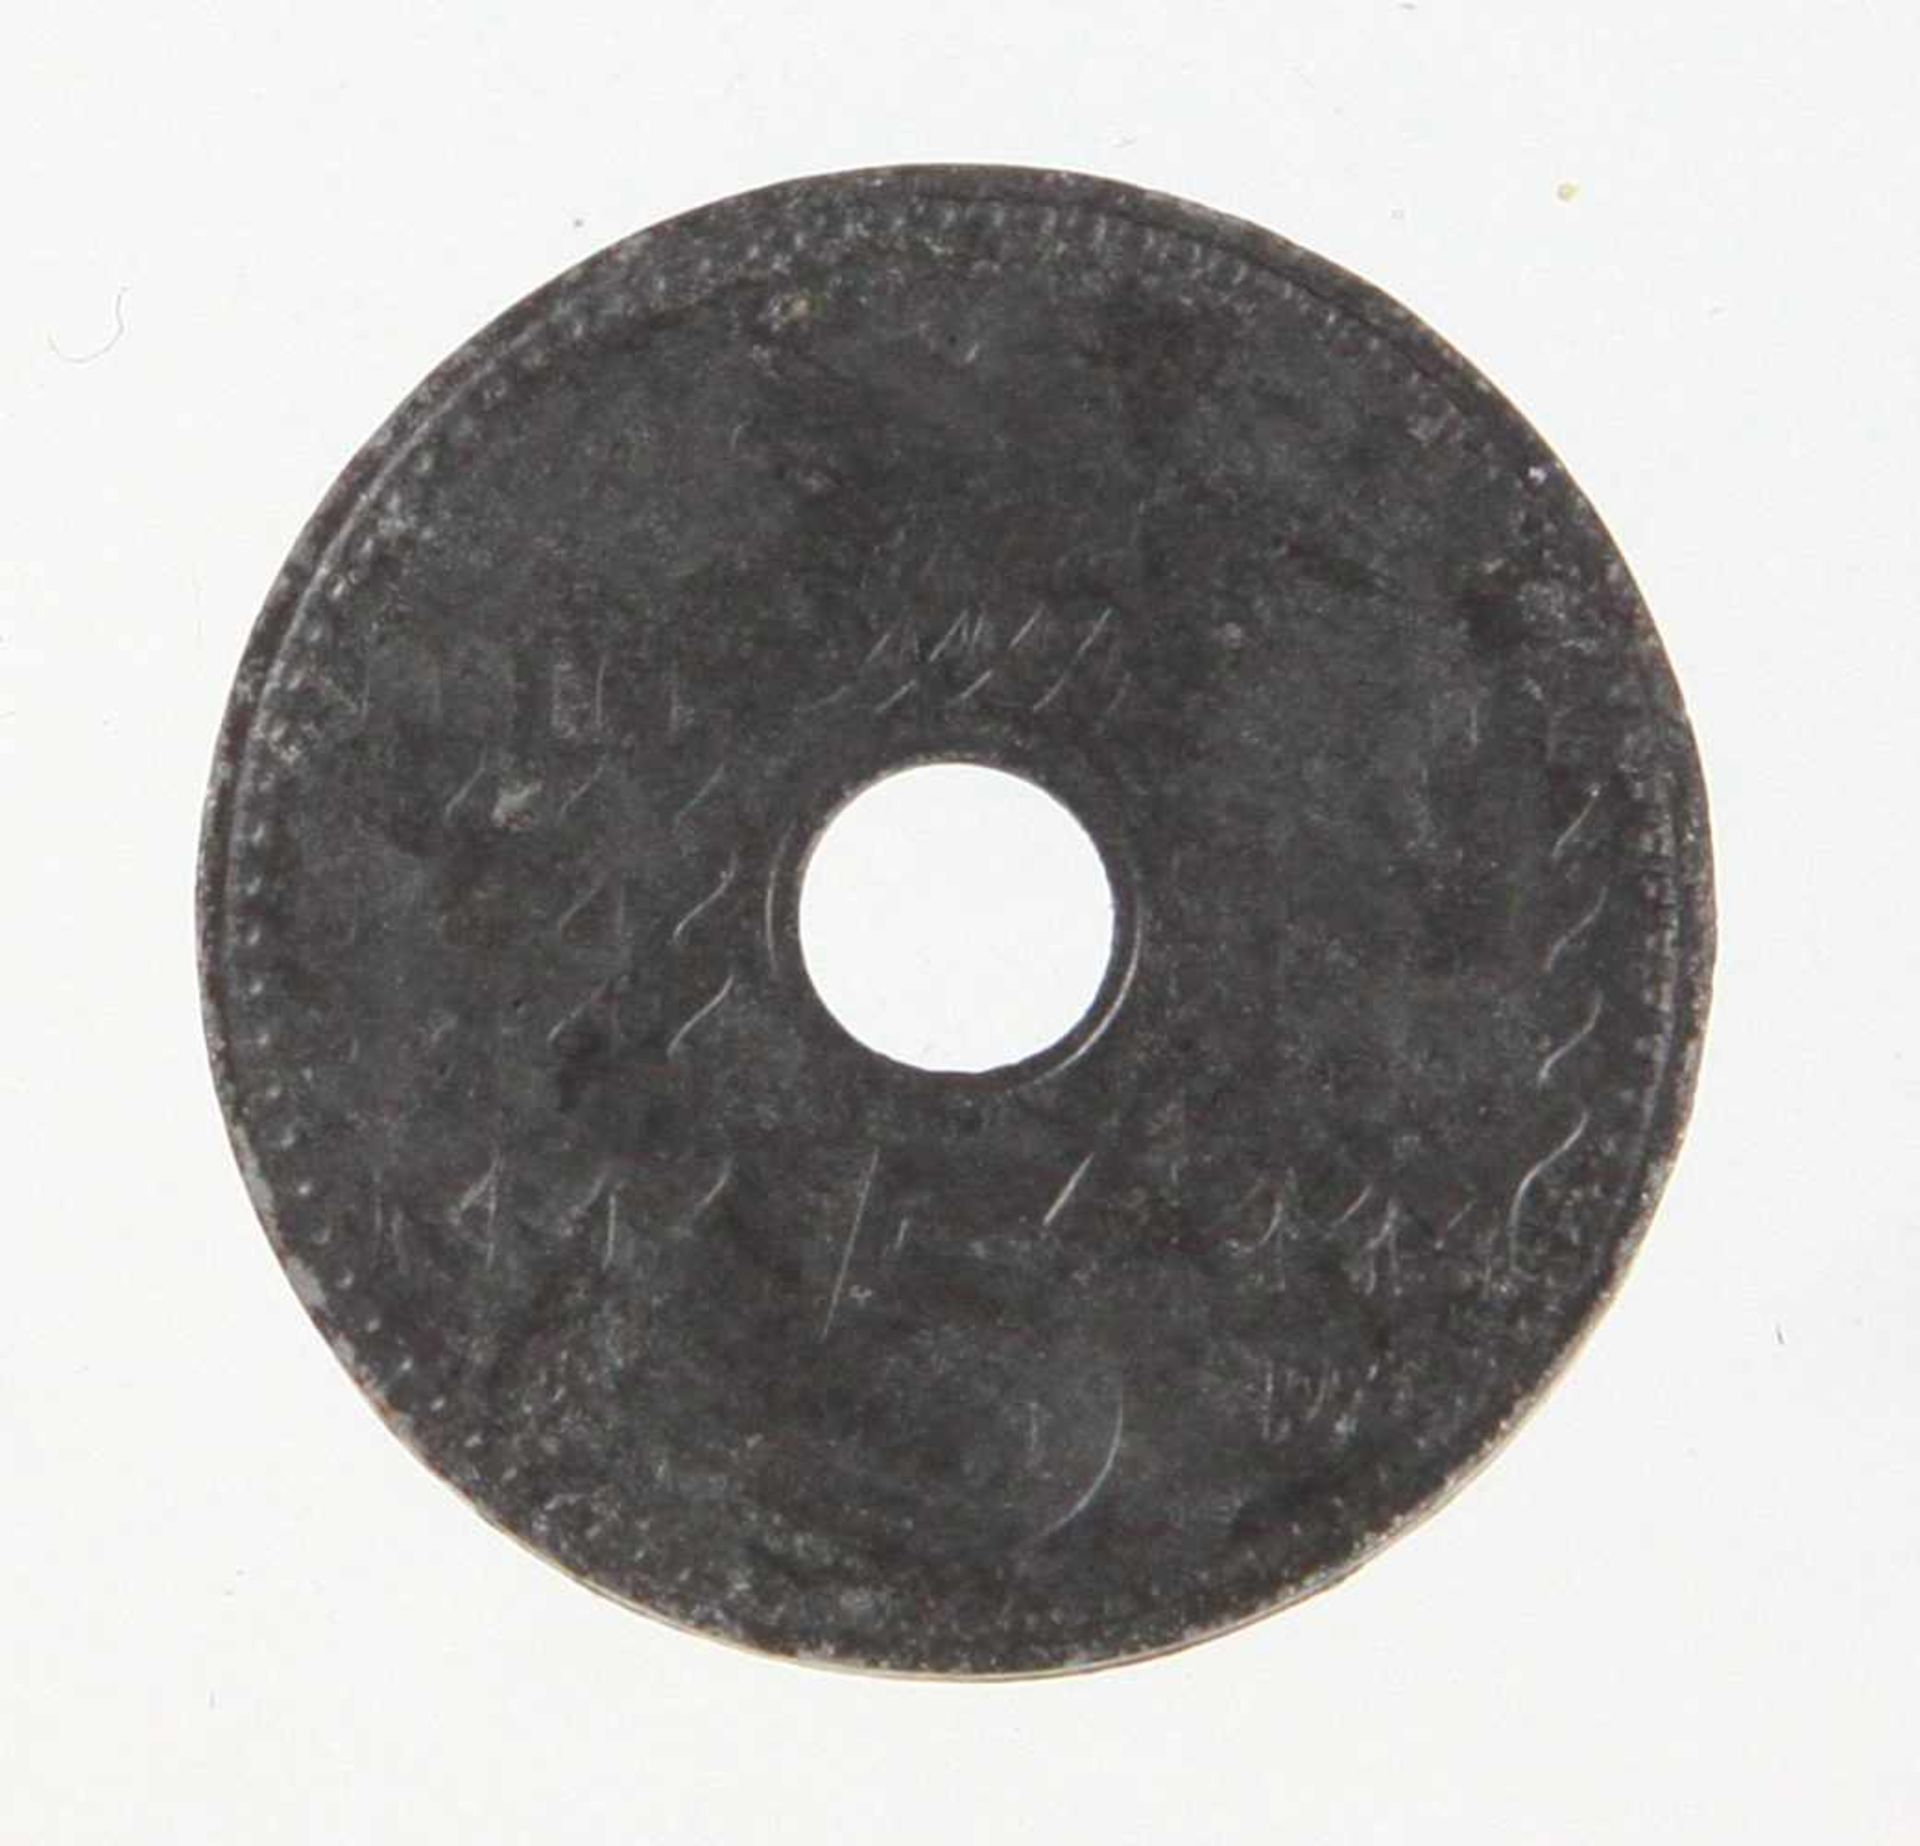 5 Pfennig 1940 ALochmünze, Reichskreditkassen 1940 A, Ø ca. 19 mm, § 86/86a StGB- - -17.85 % buyer's